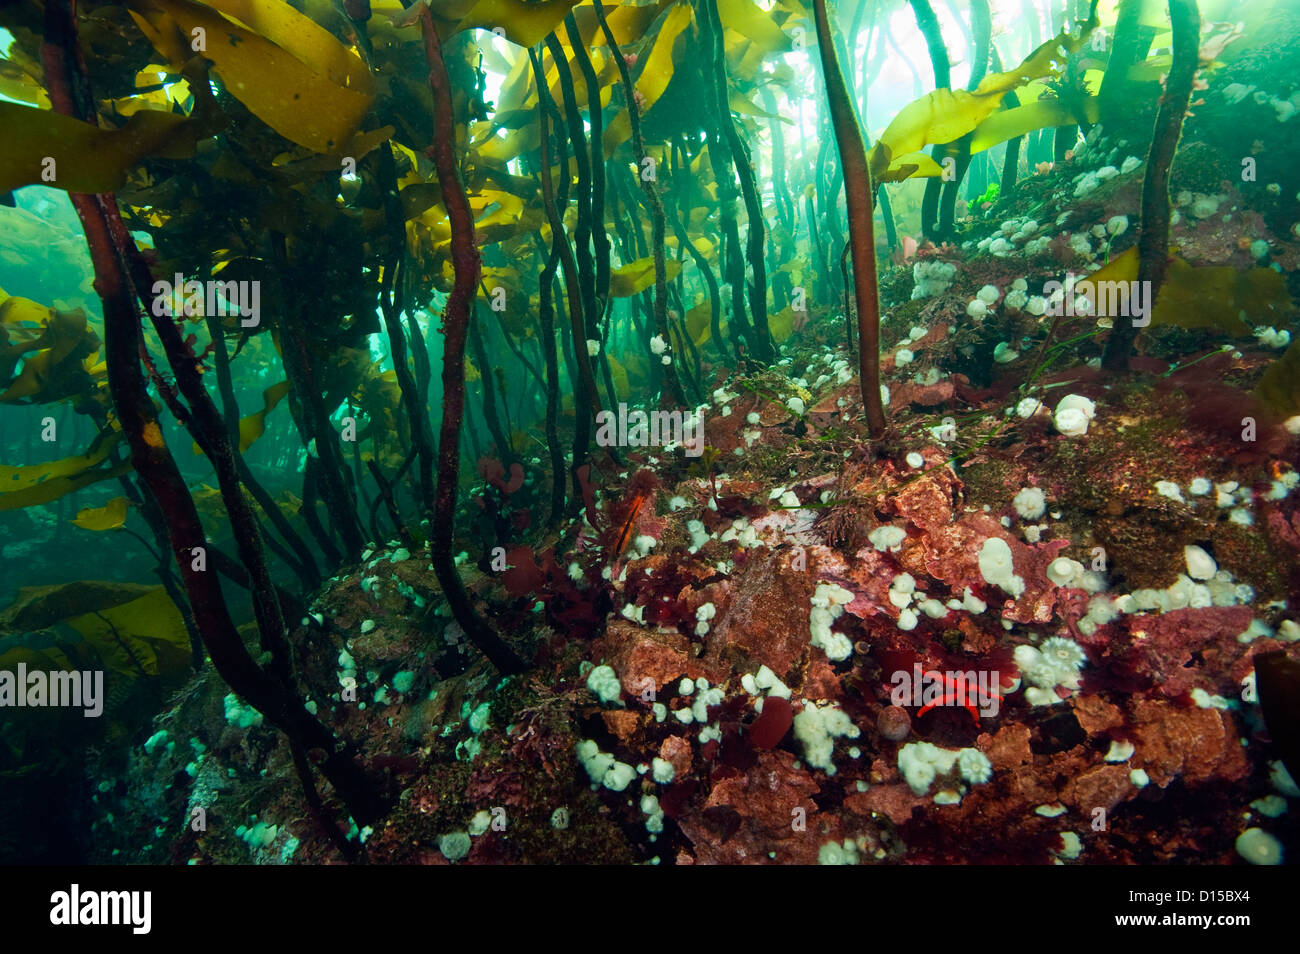 Un tappeto spesso di kelp copre la scogliera rocciosa nel passaggio di doratura, situato nel passaggio di doratura, Isola di Vancouver, Canada Foto Stock